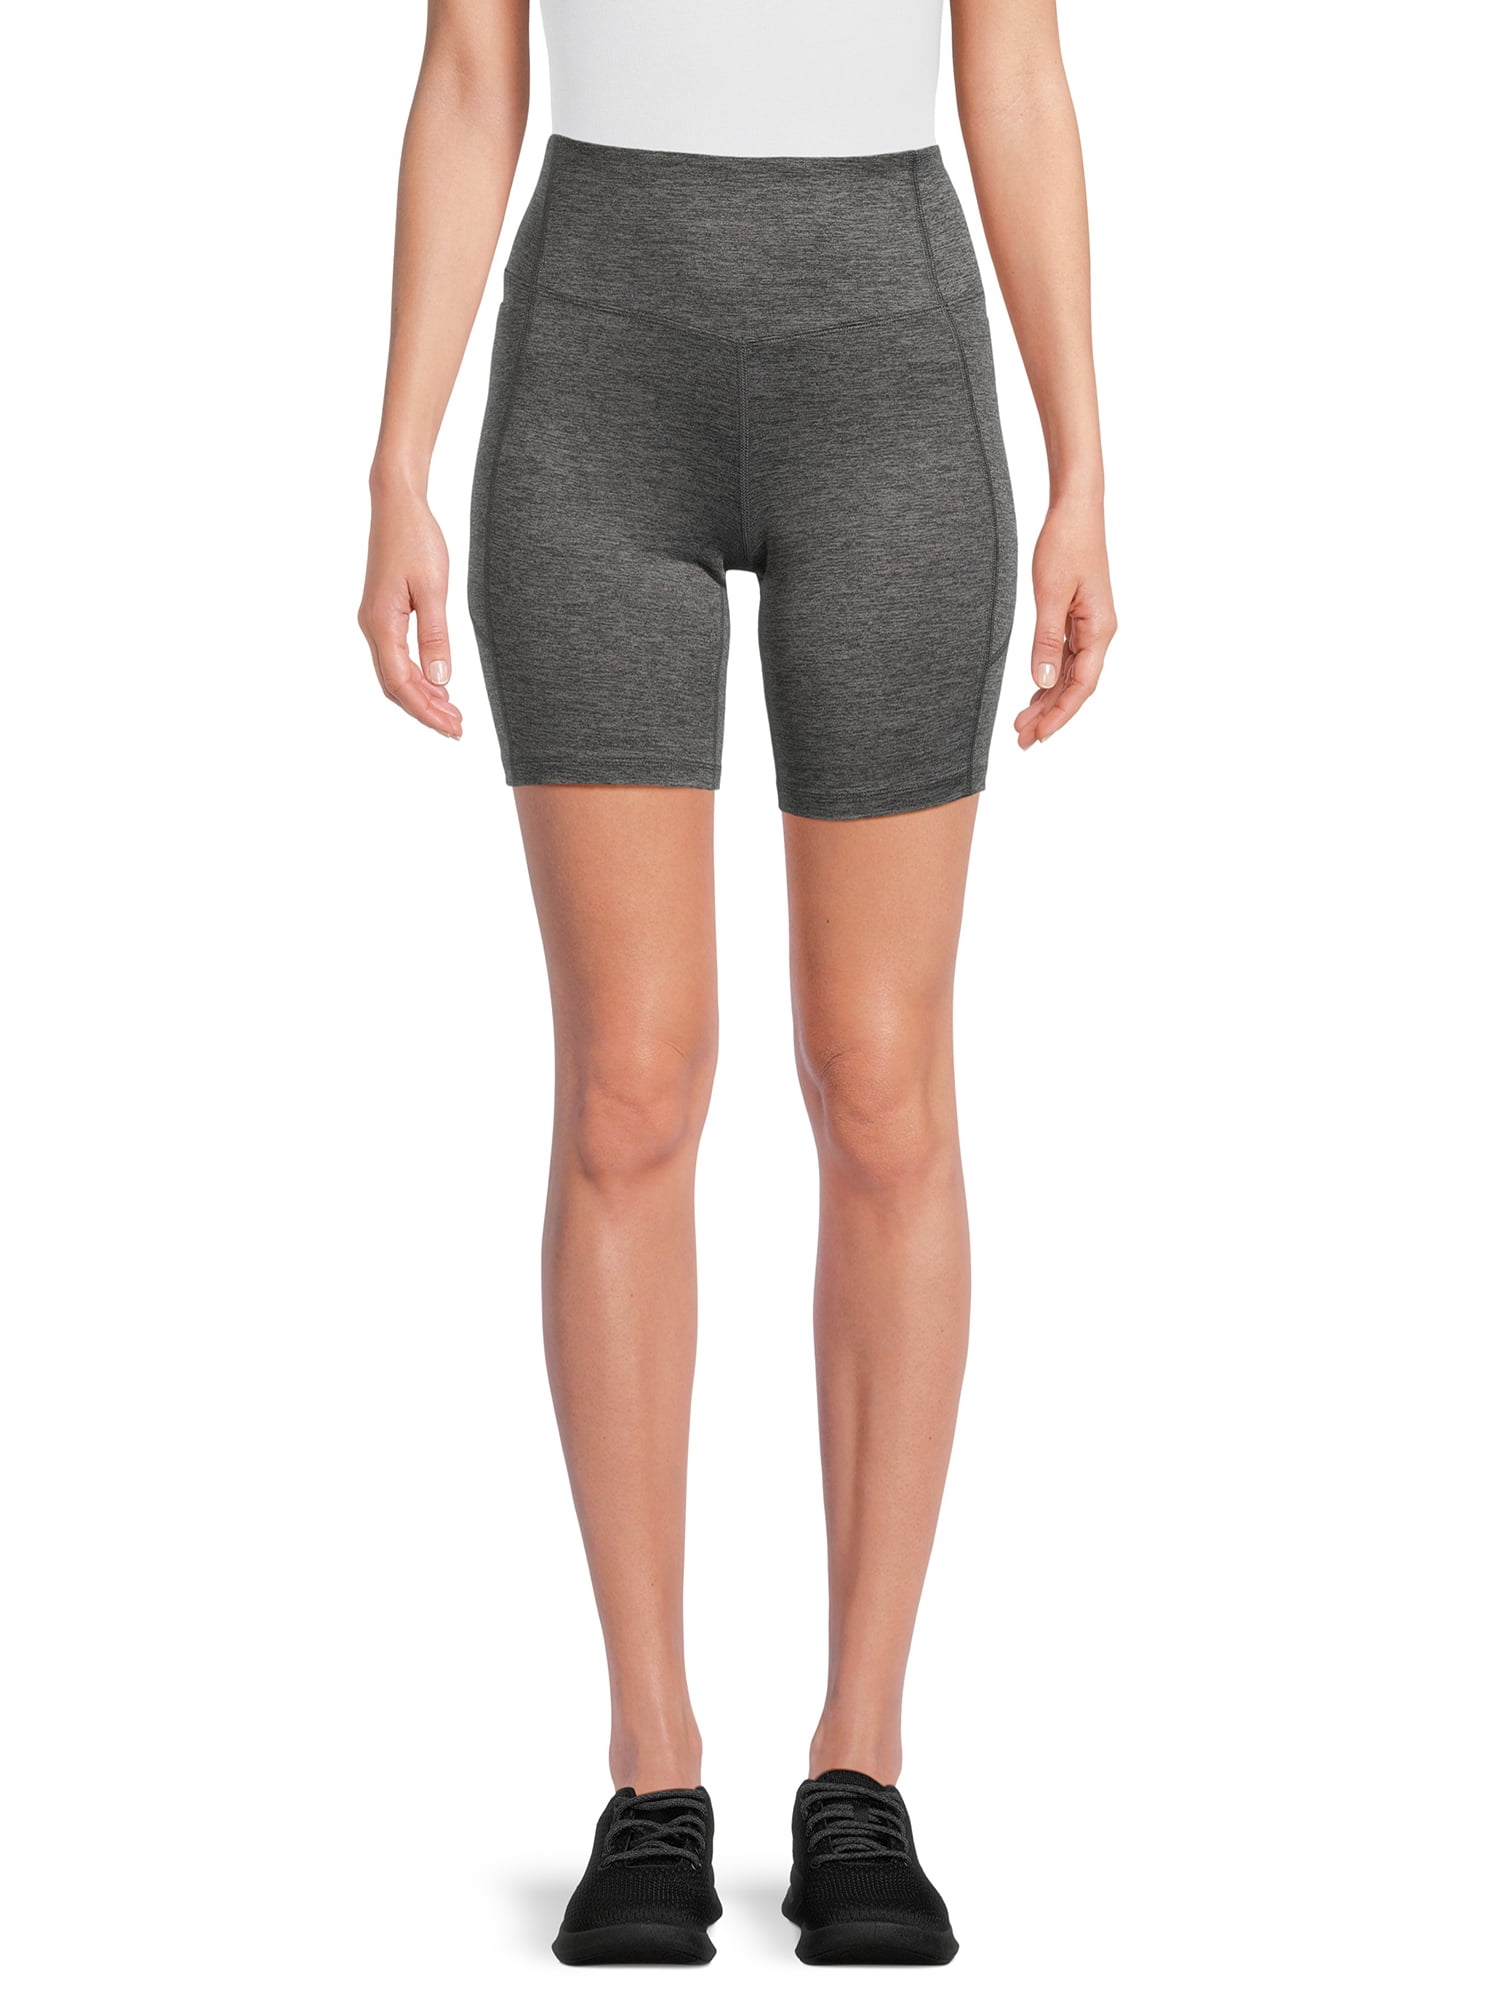 Athletic Works Women's Bike Shorts, 7” Inseam, Sizes XS-XXXL - Walmart.com